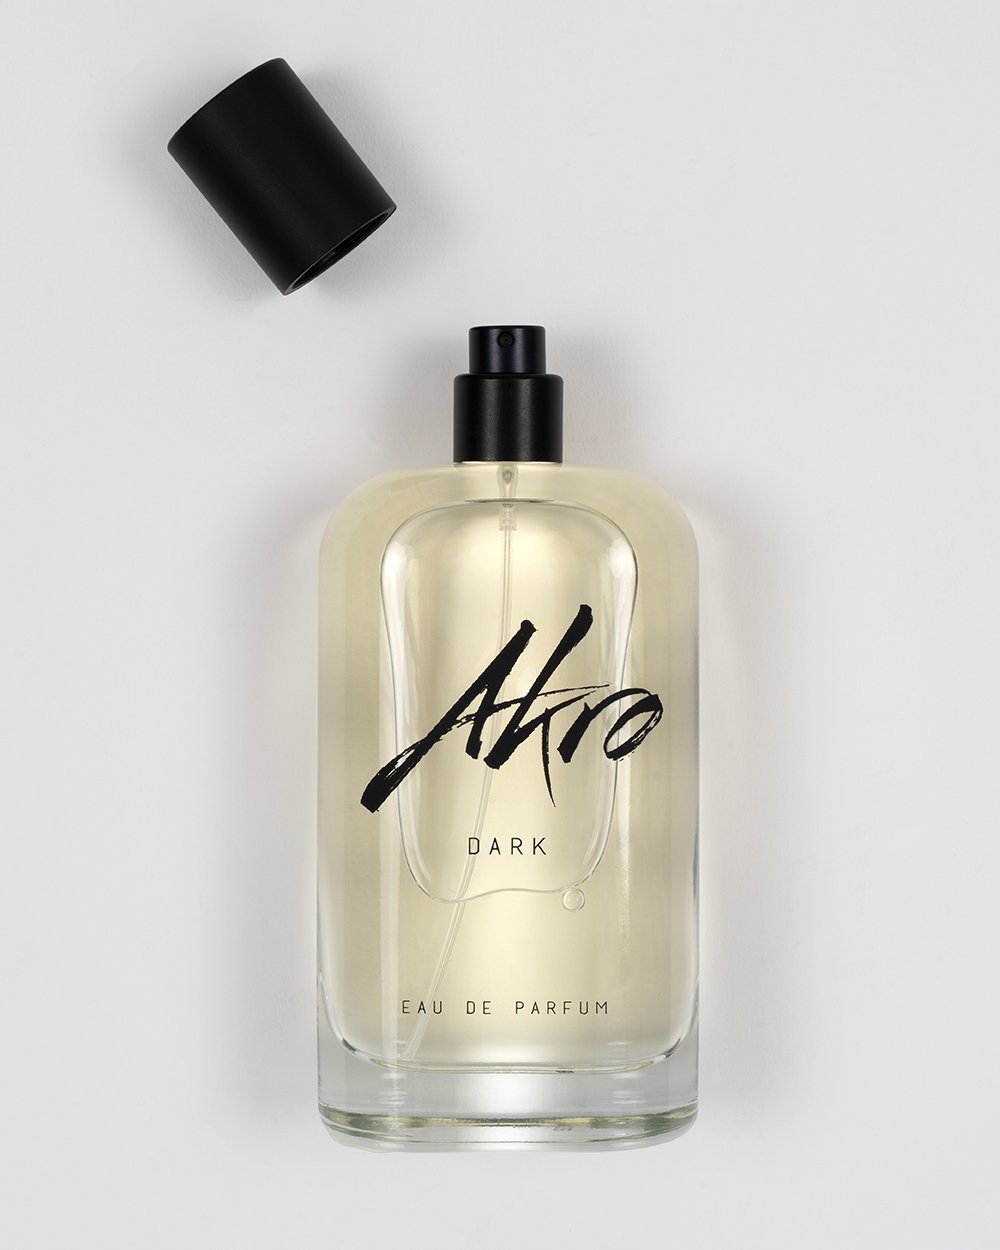 Akro - DARK Eau de Parfum 100ML